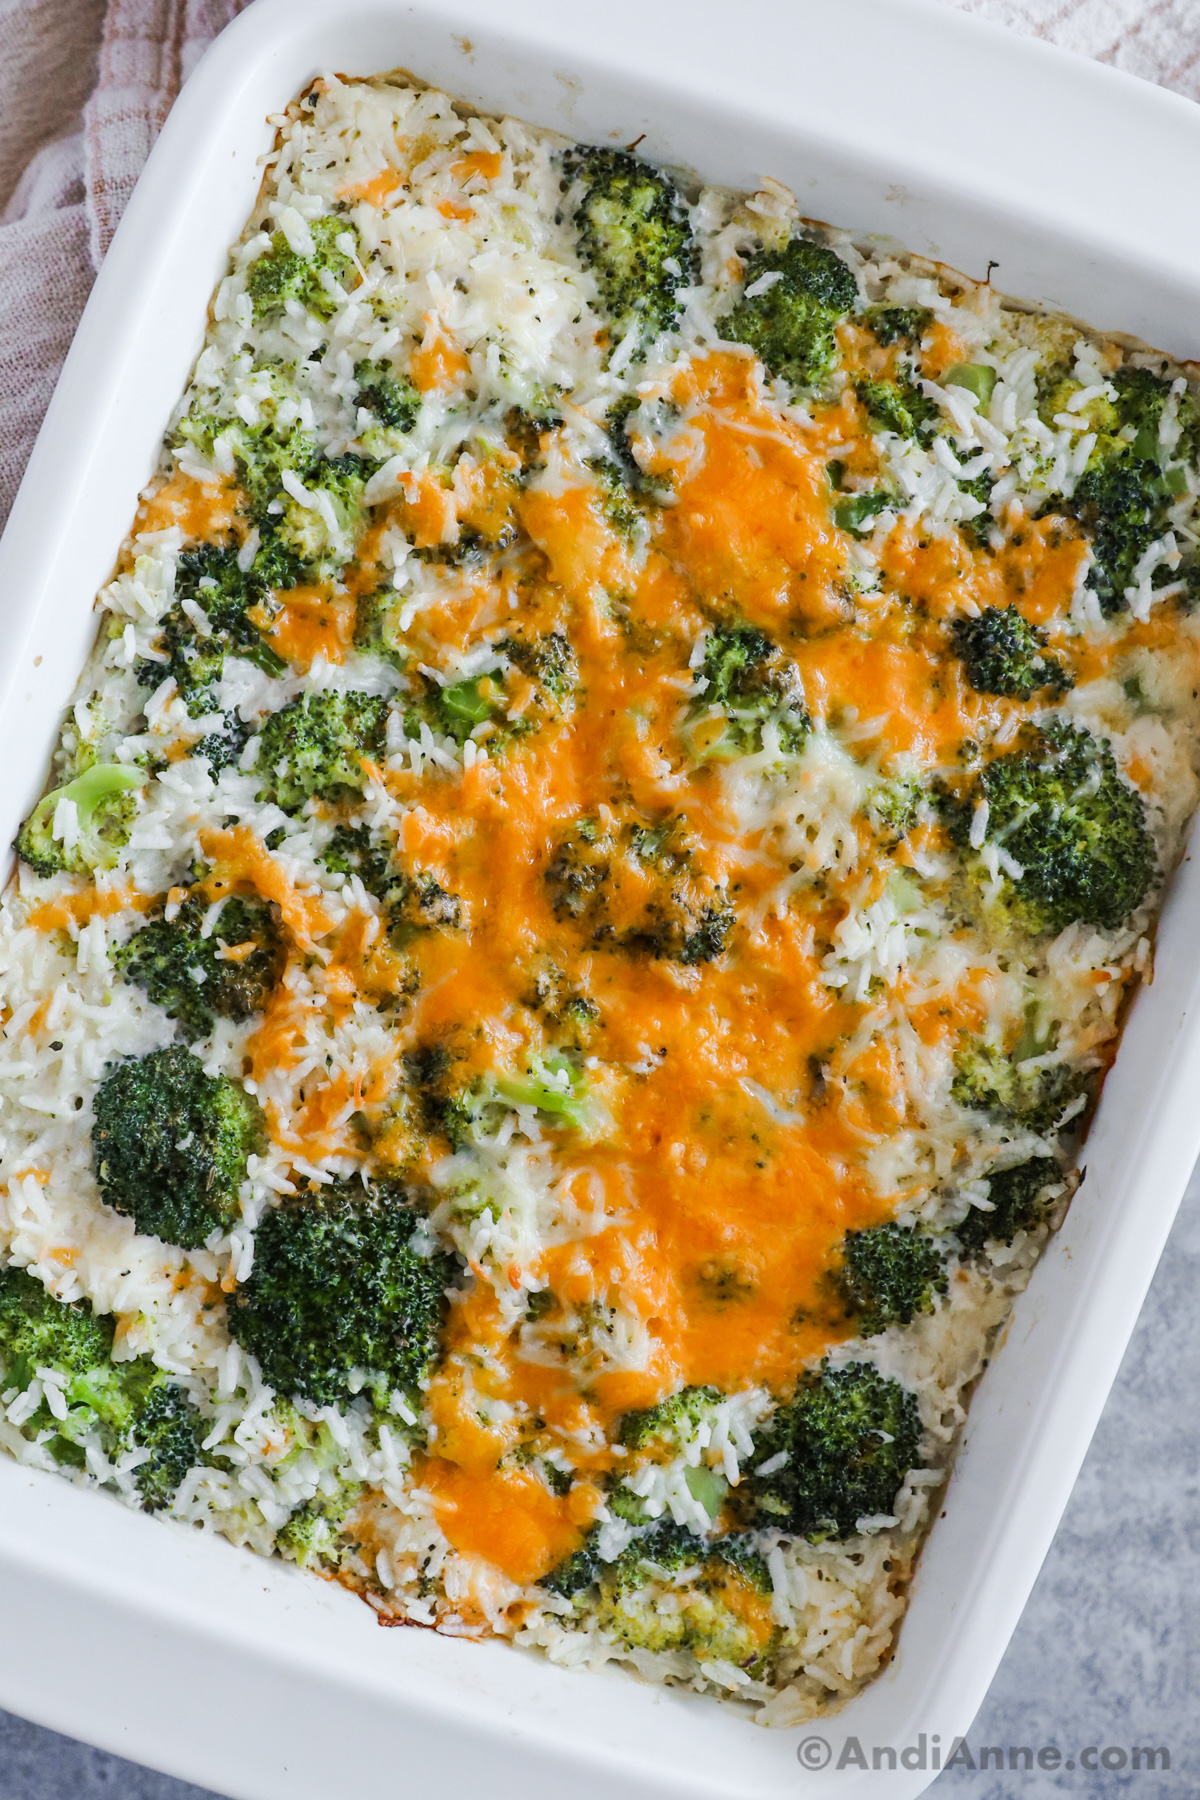 Broccoli rice cheese casserole recipe in a white dish.